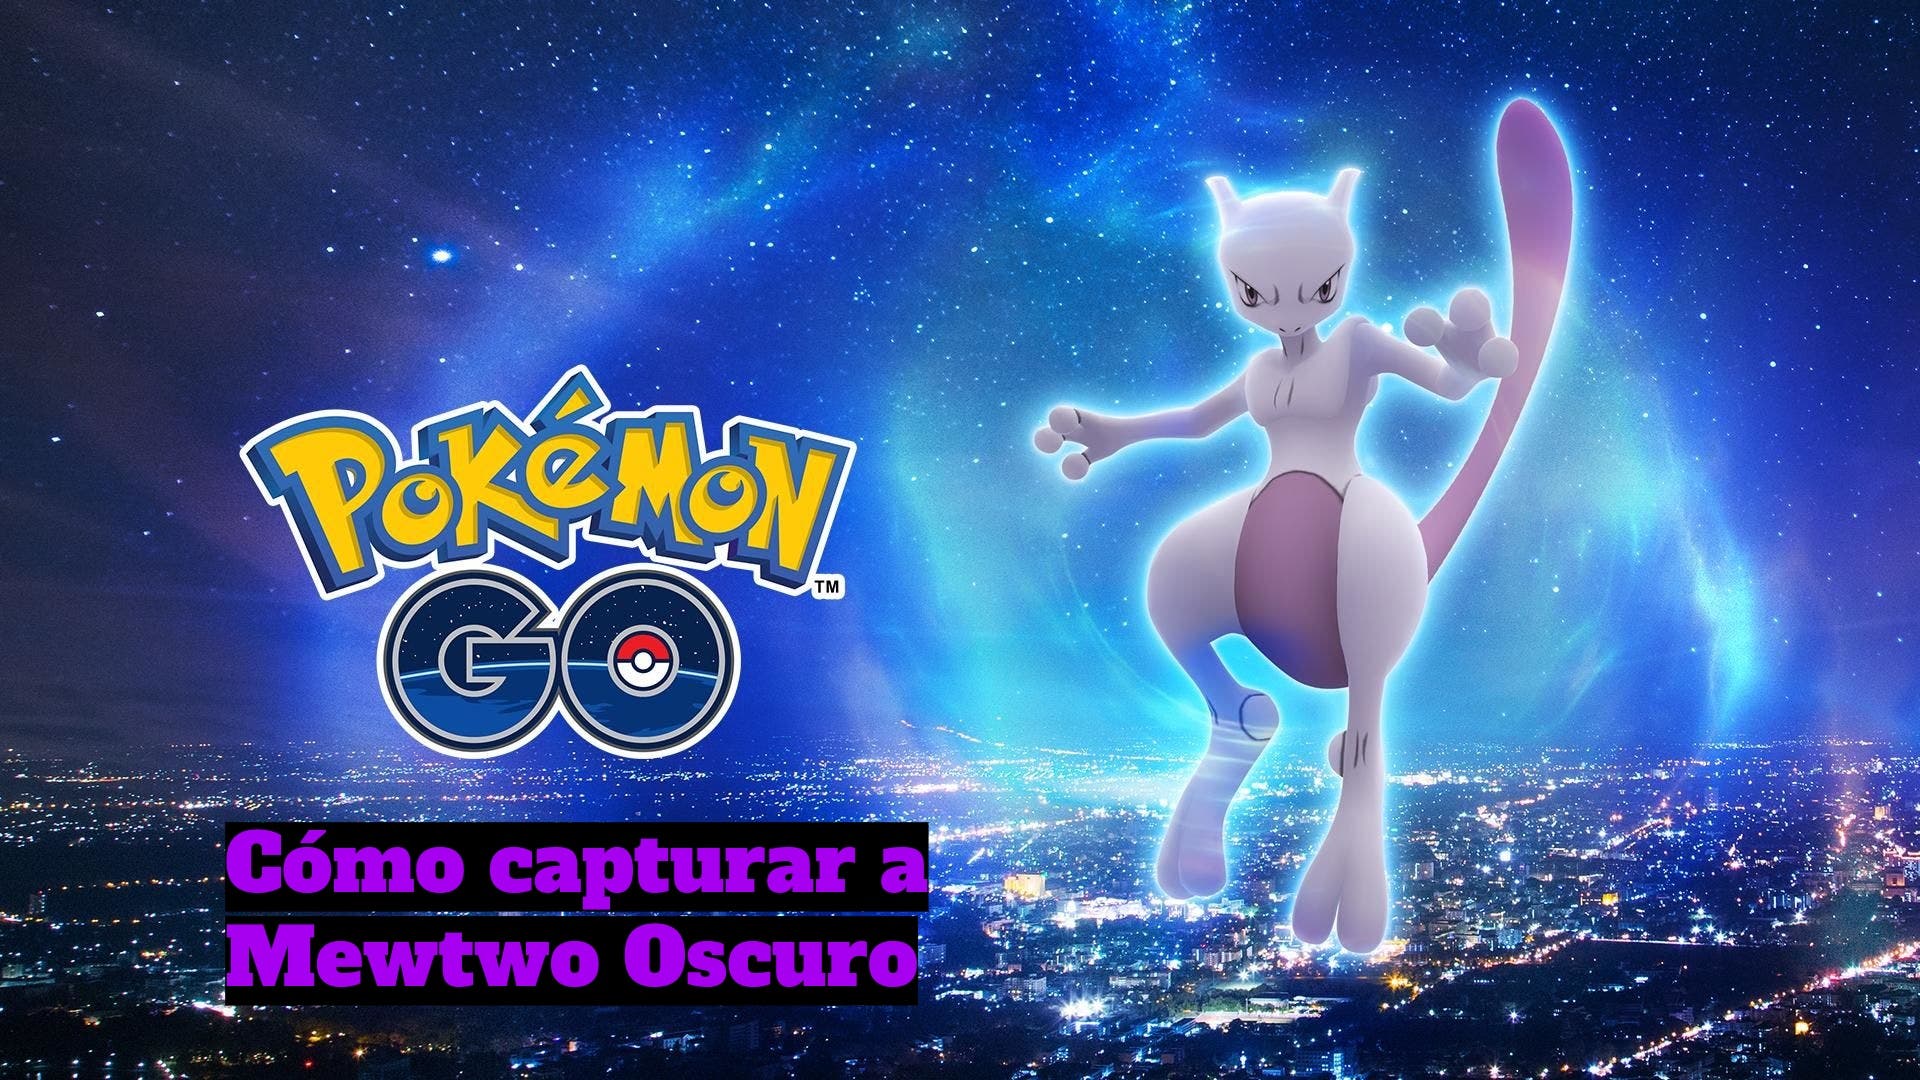 MEWTWO OSCURO ESTÁ ROTÍSIMO!-Pokémon Go PvP 